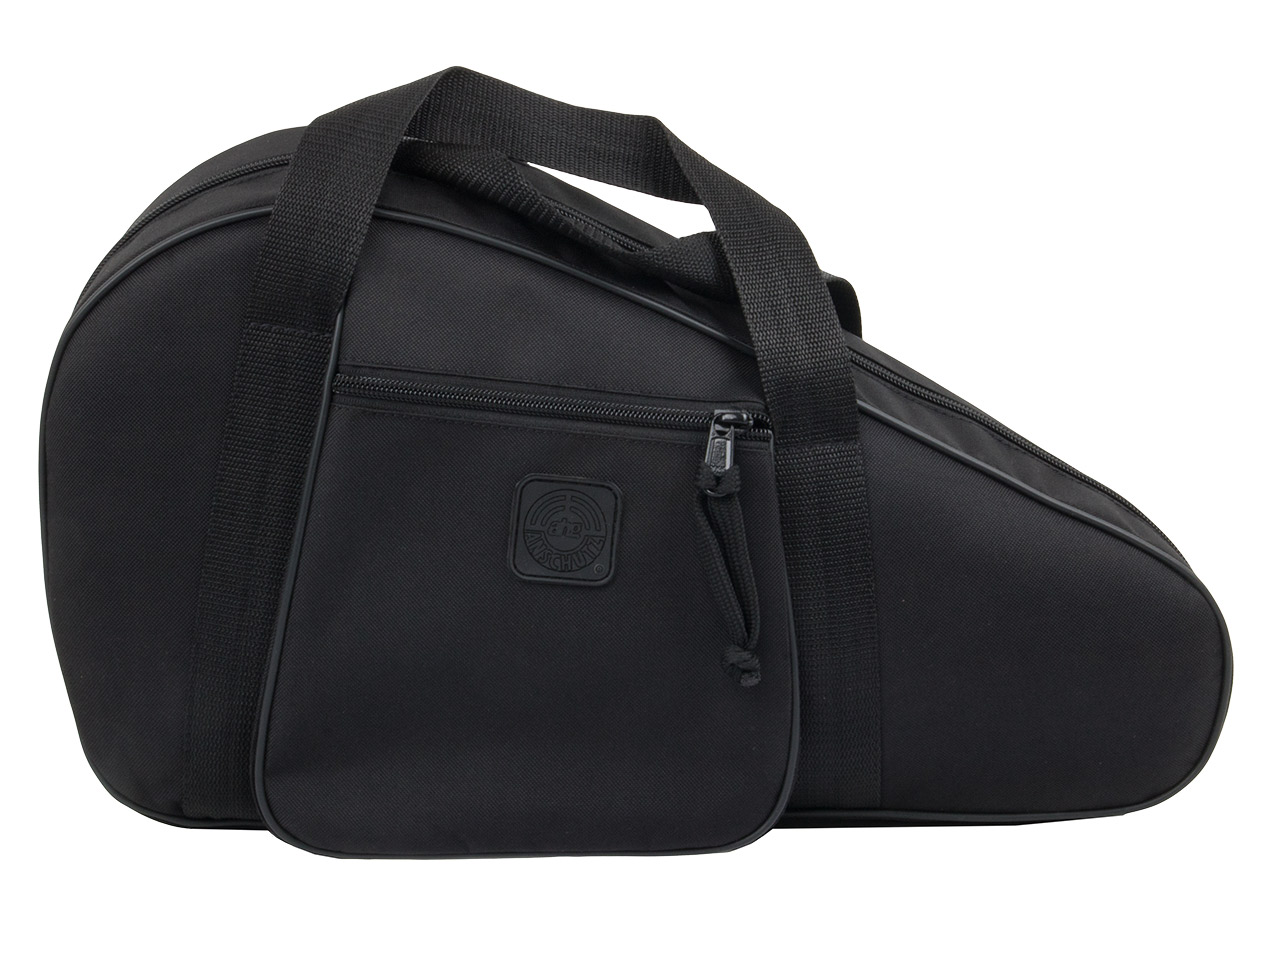 Pistolenfutteral Pistolentasche Transporttasche AHG 45 x 22 cm abschließbar Noppenschaumstoffeinlage Außentasche schwarz